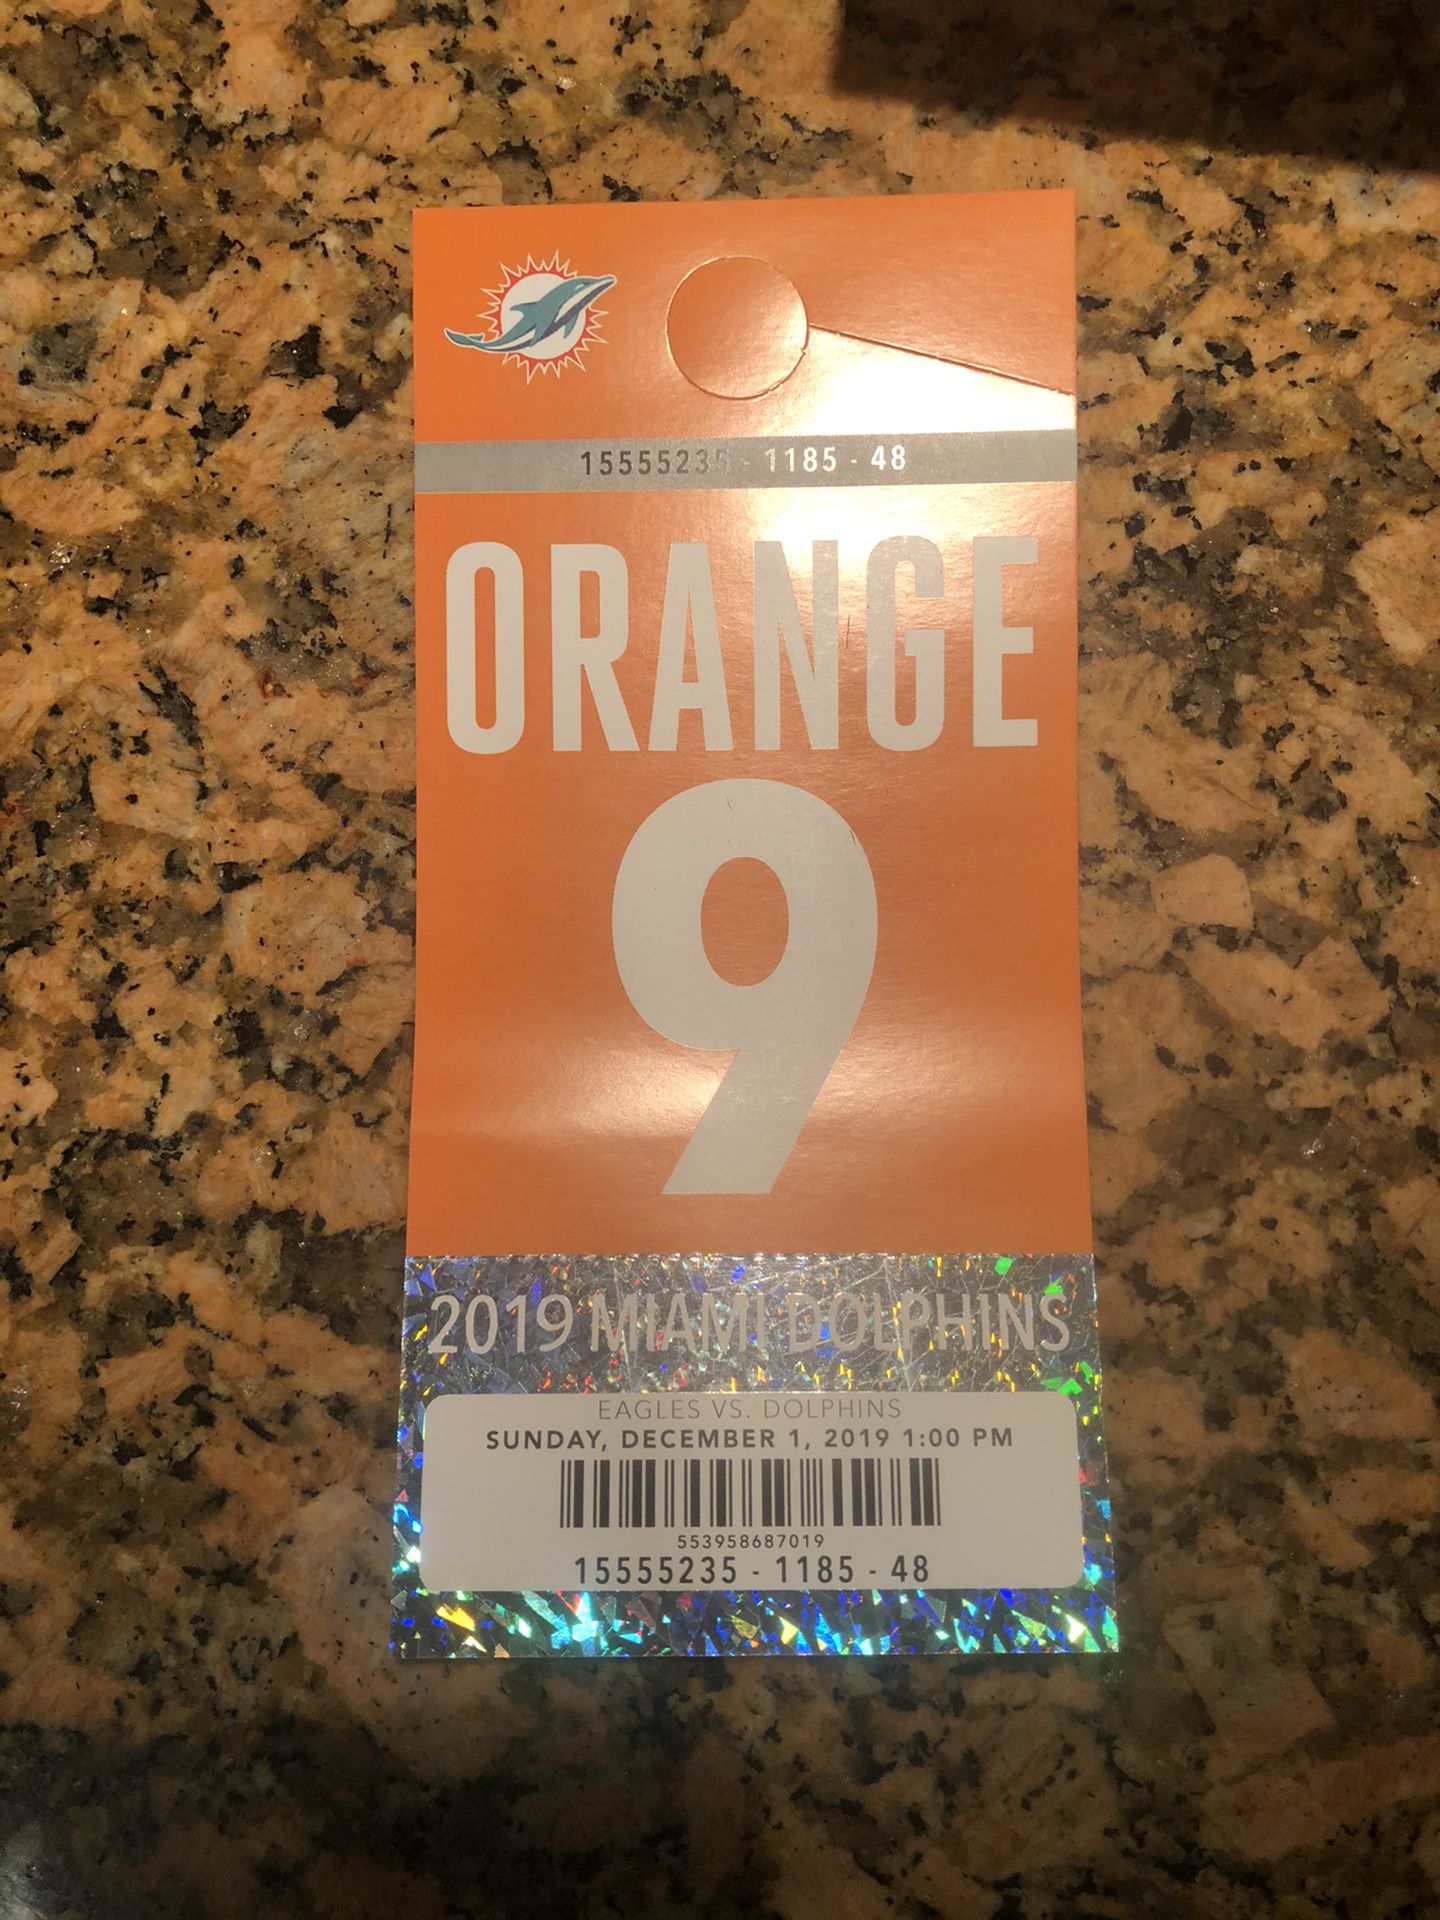 Miami Dolphins vs Philadelphia Eagles orange parking pass